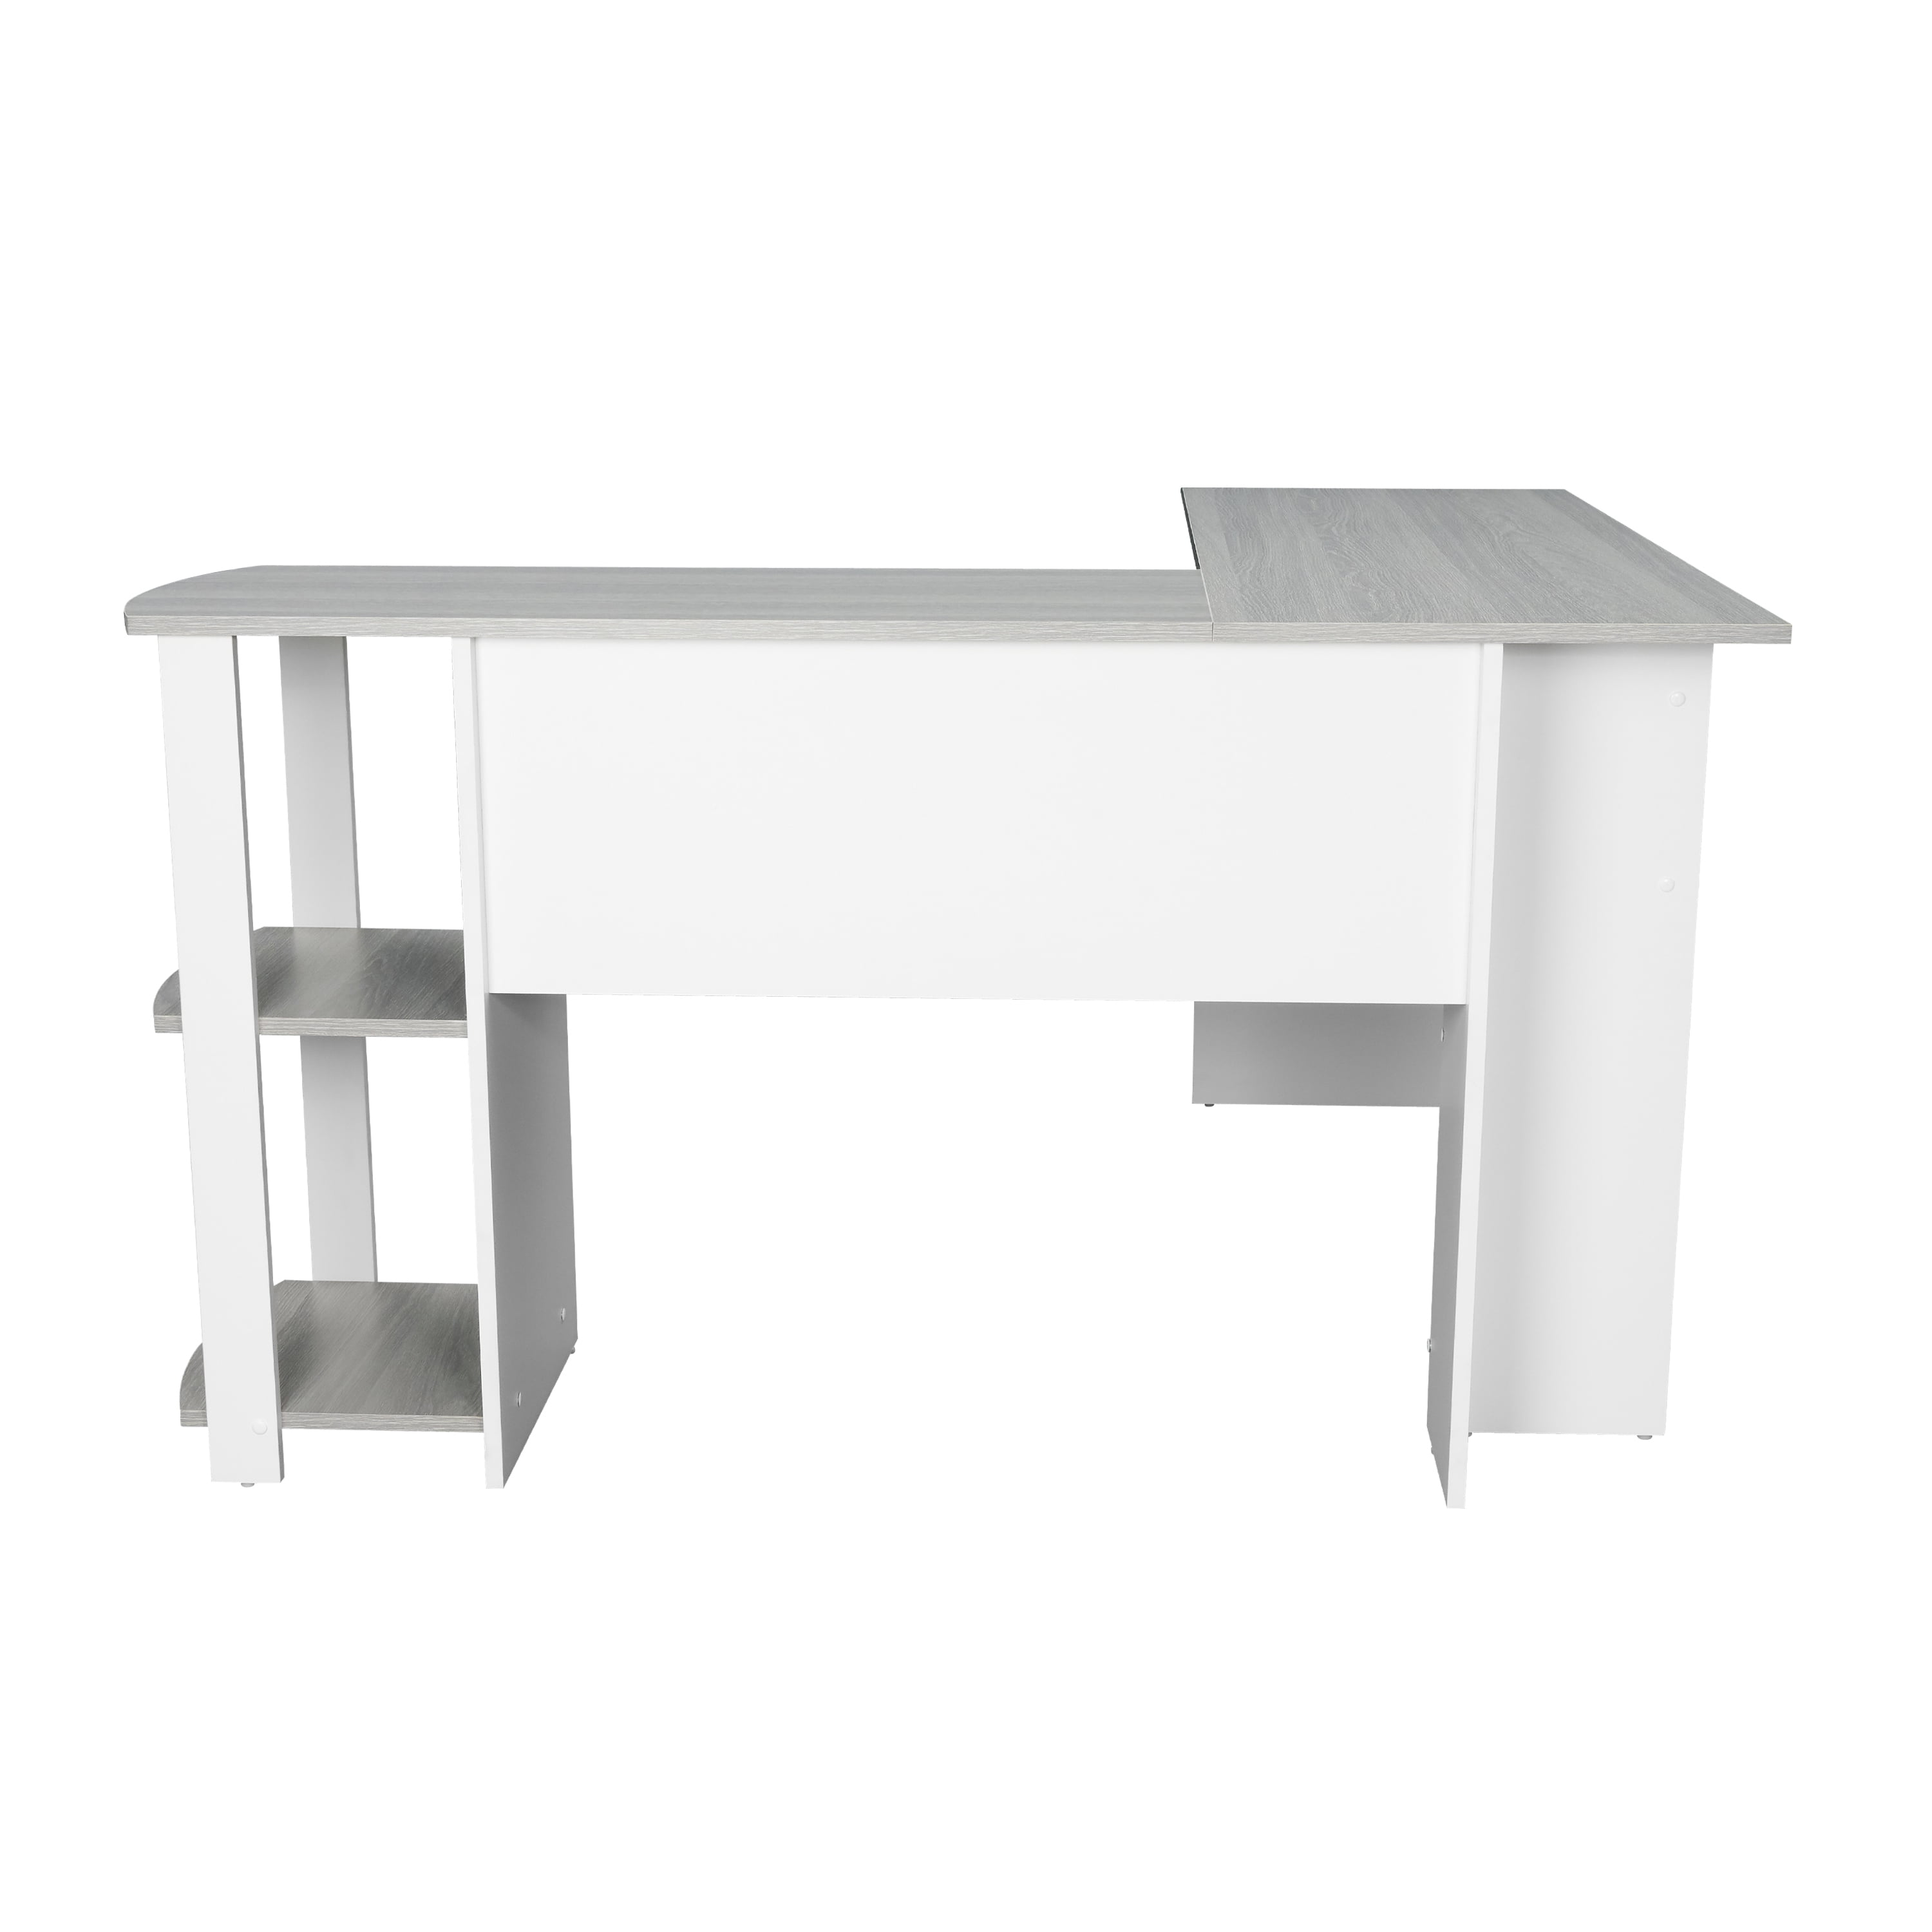 Techni Mobili Modern L-Shaped Desk with Side Shelves, Grey